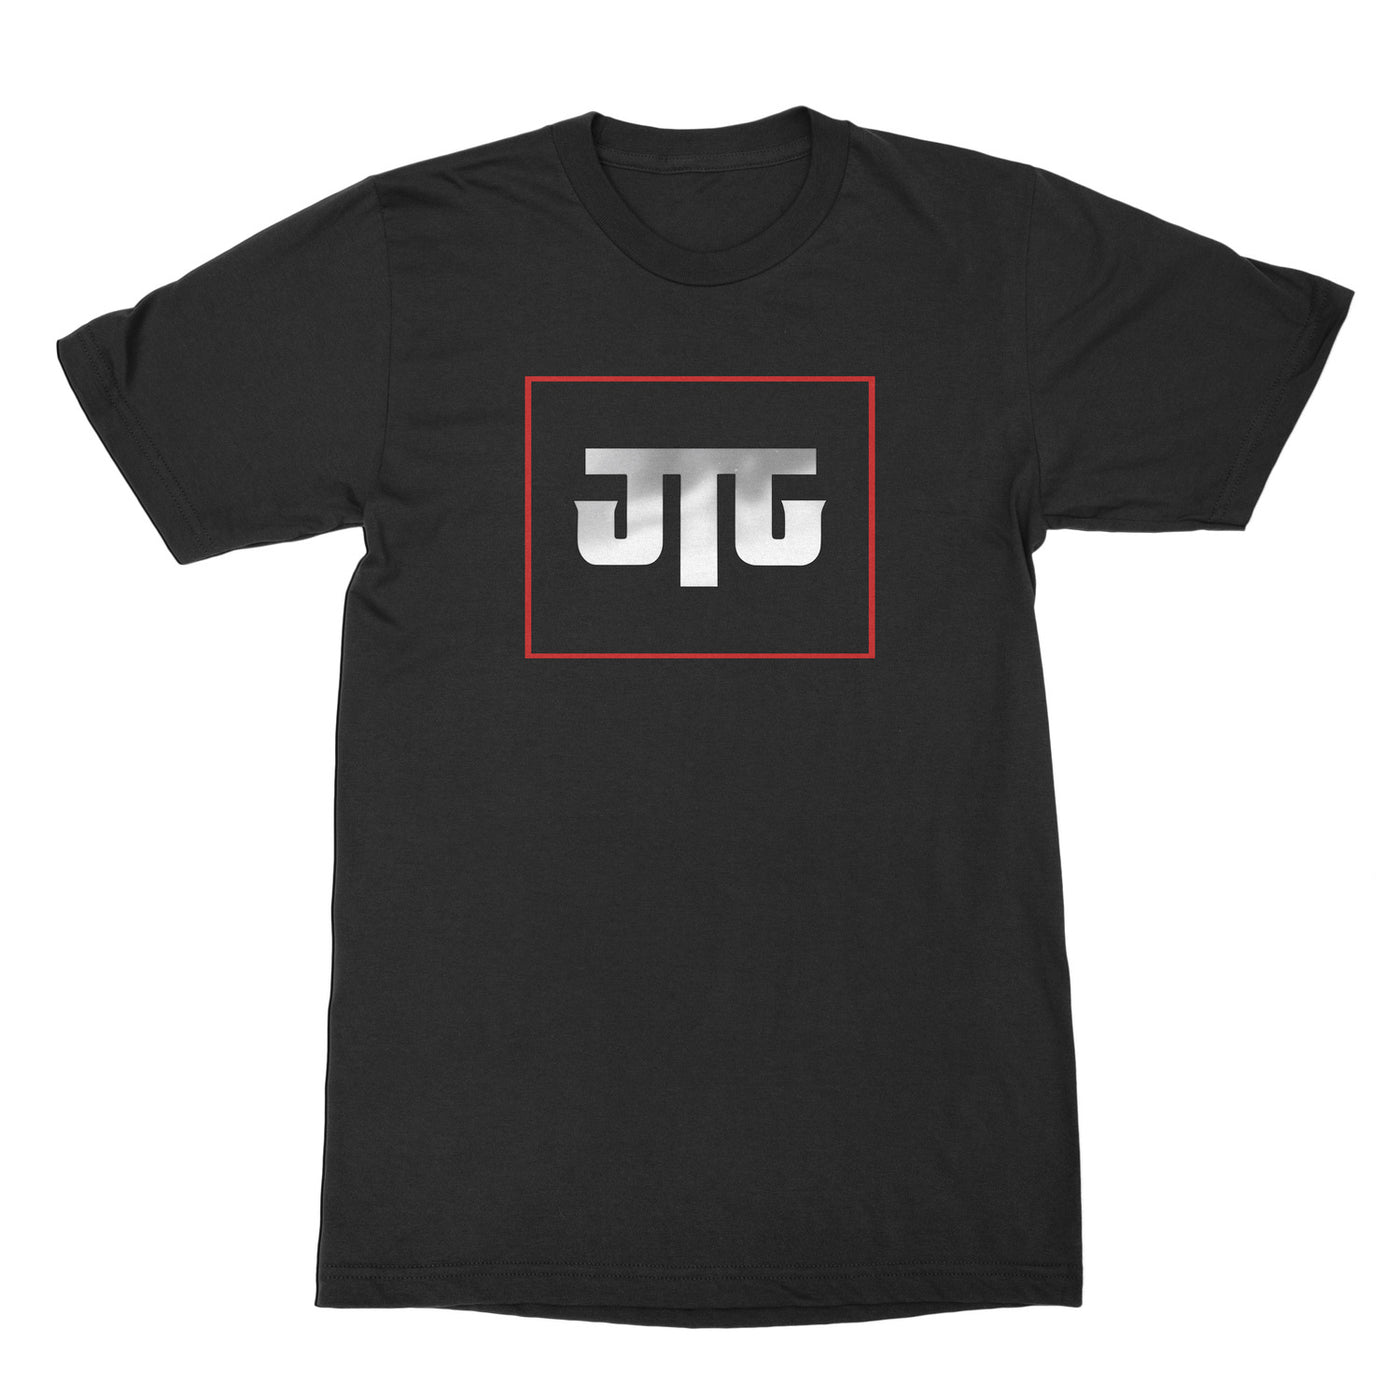 JTG Logo T-Shirt Black